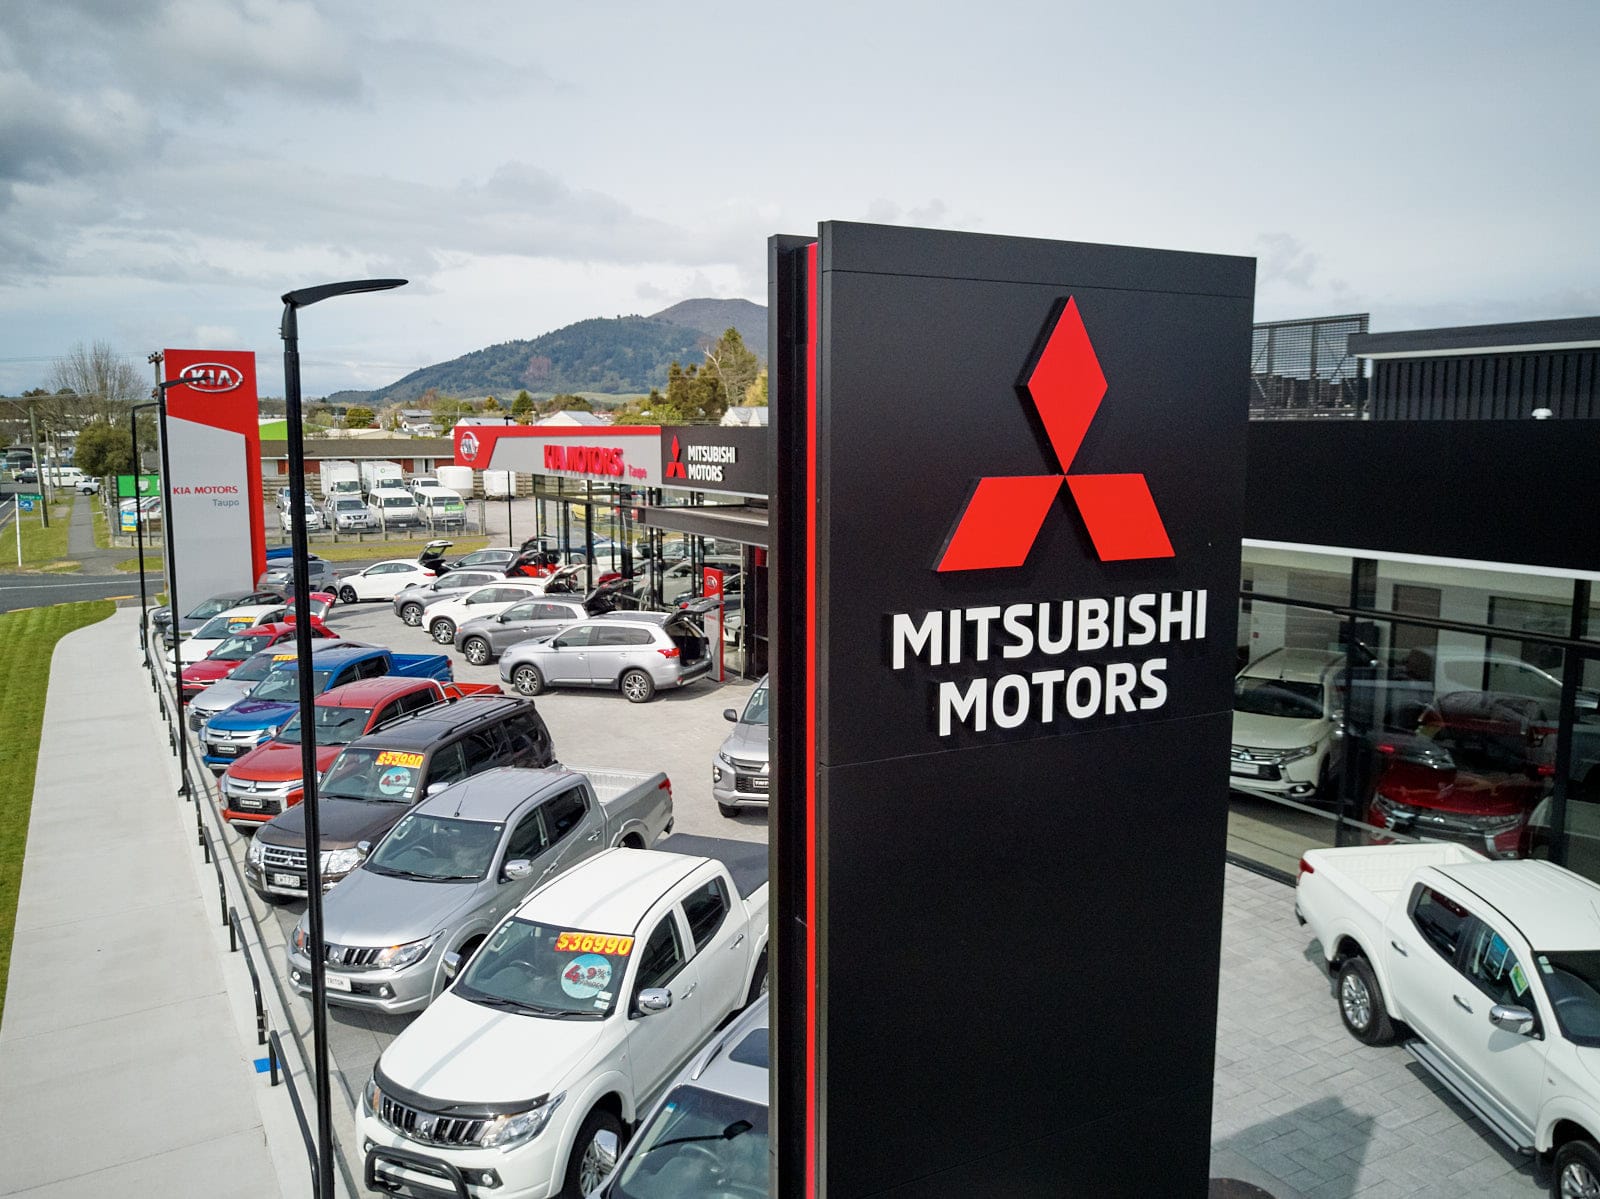 Ingham Mitsubishi Taupo car dealership